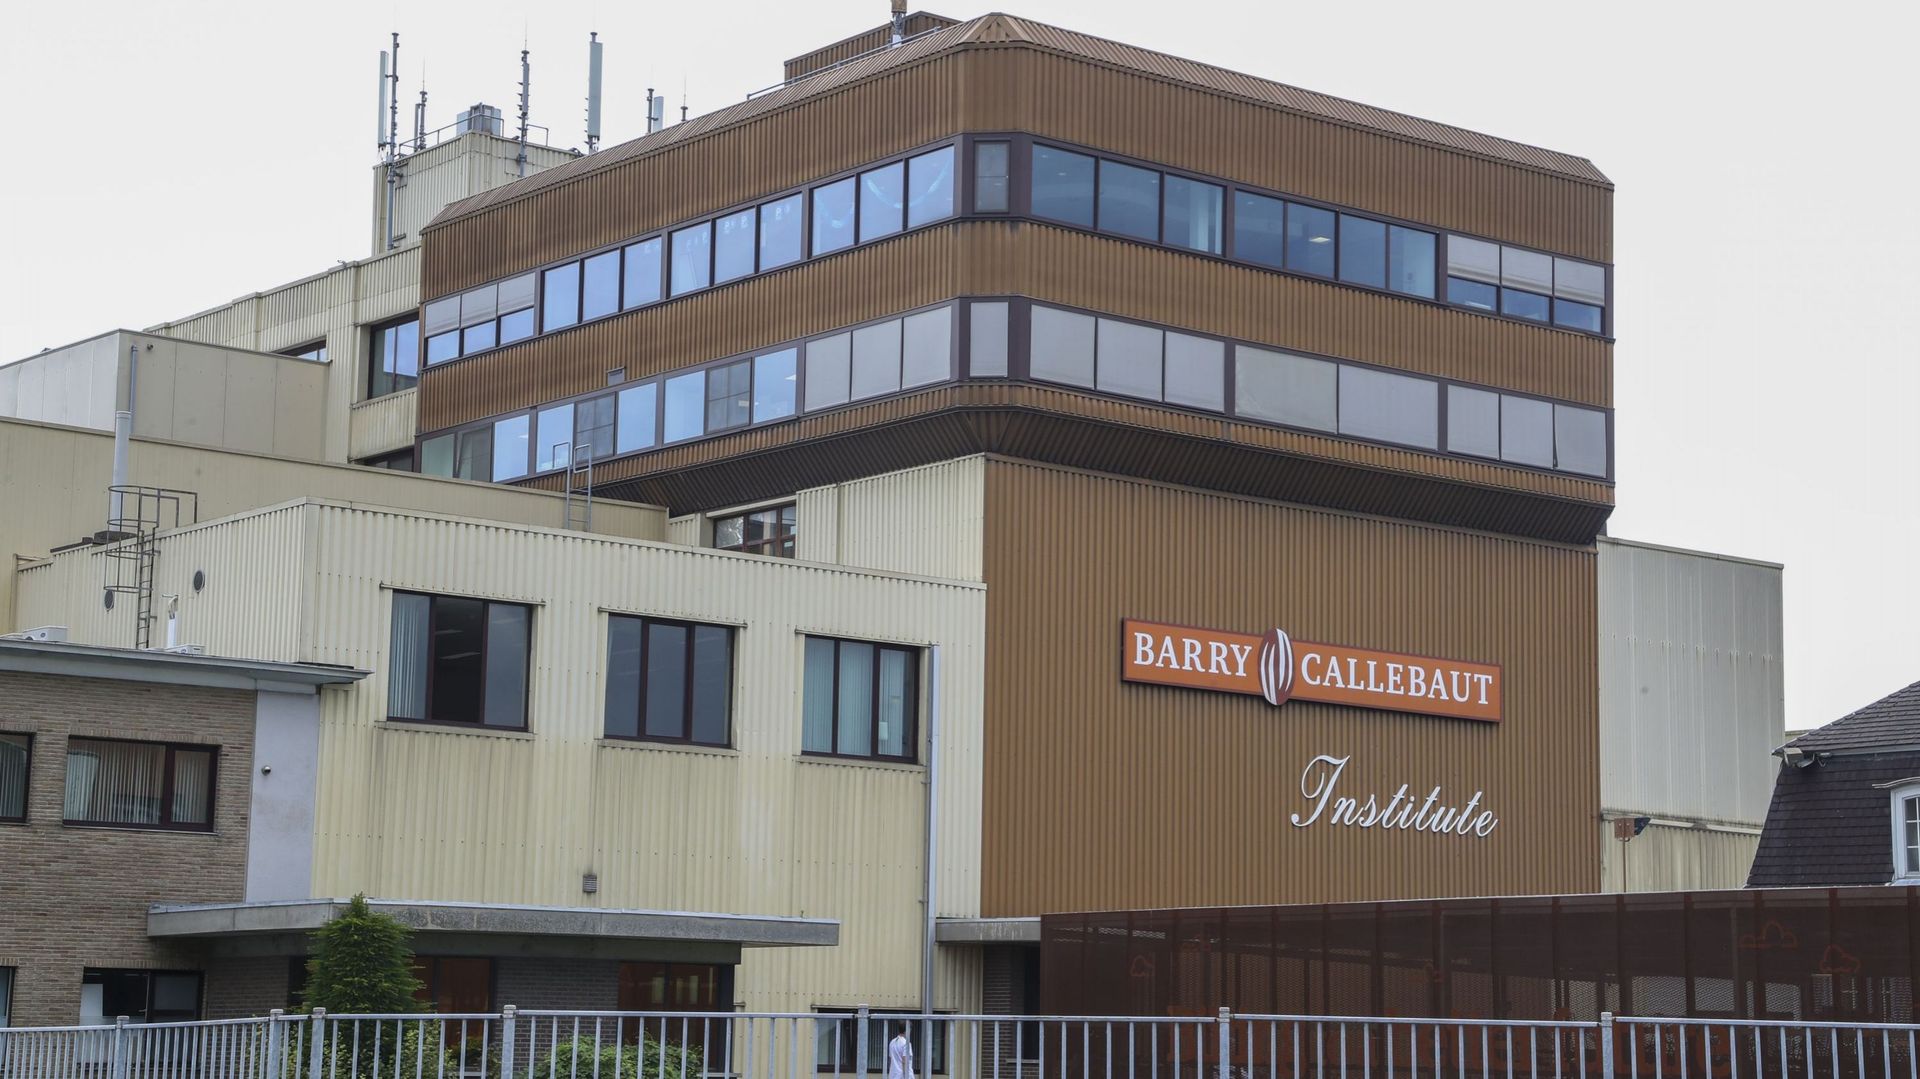 Le site de production de Barry Callebaut à Wieze